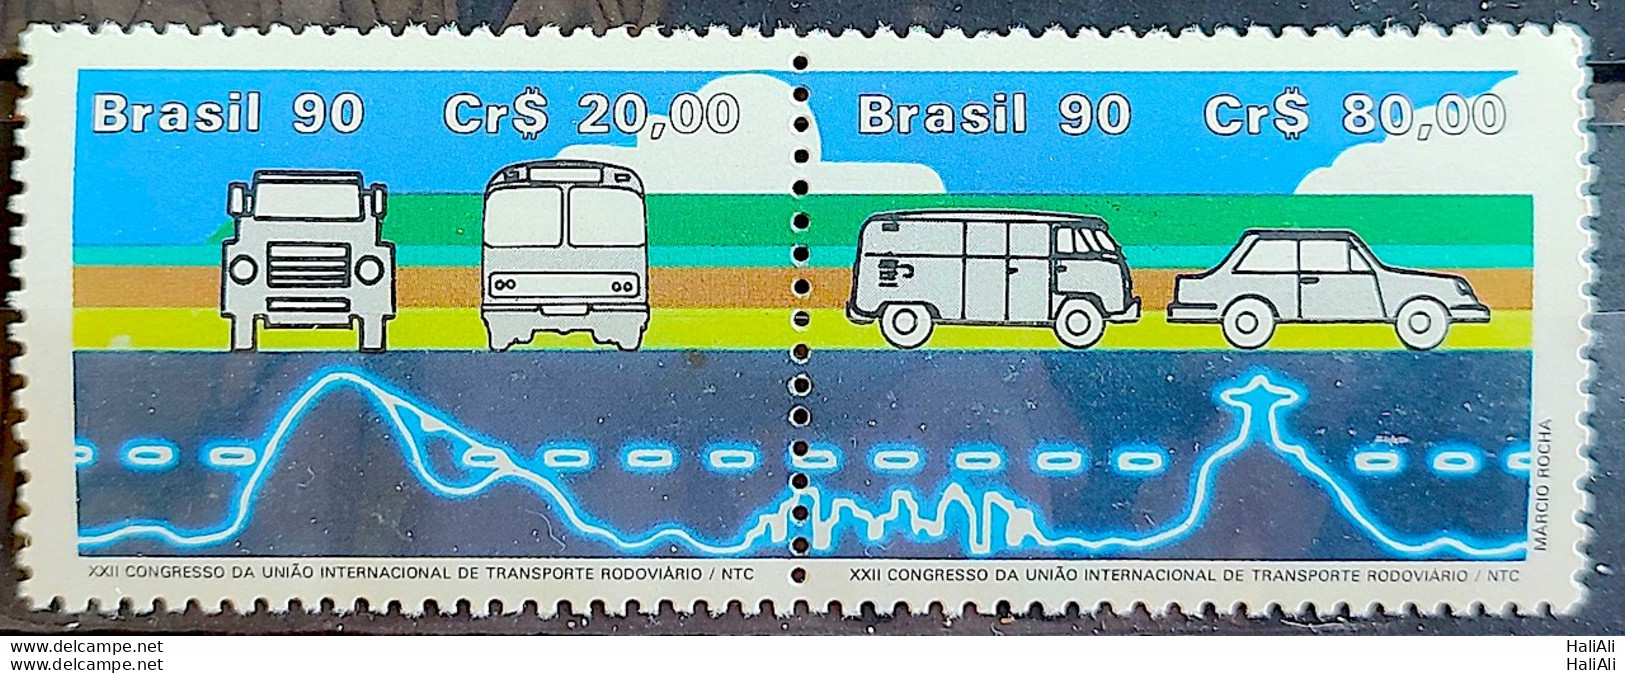 C 1681 Brazil Stamp International Transport Congress Truck Bus Car Rio De Janeiro 1990 - Ongebruikt